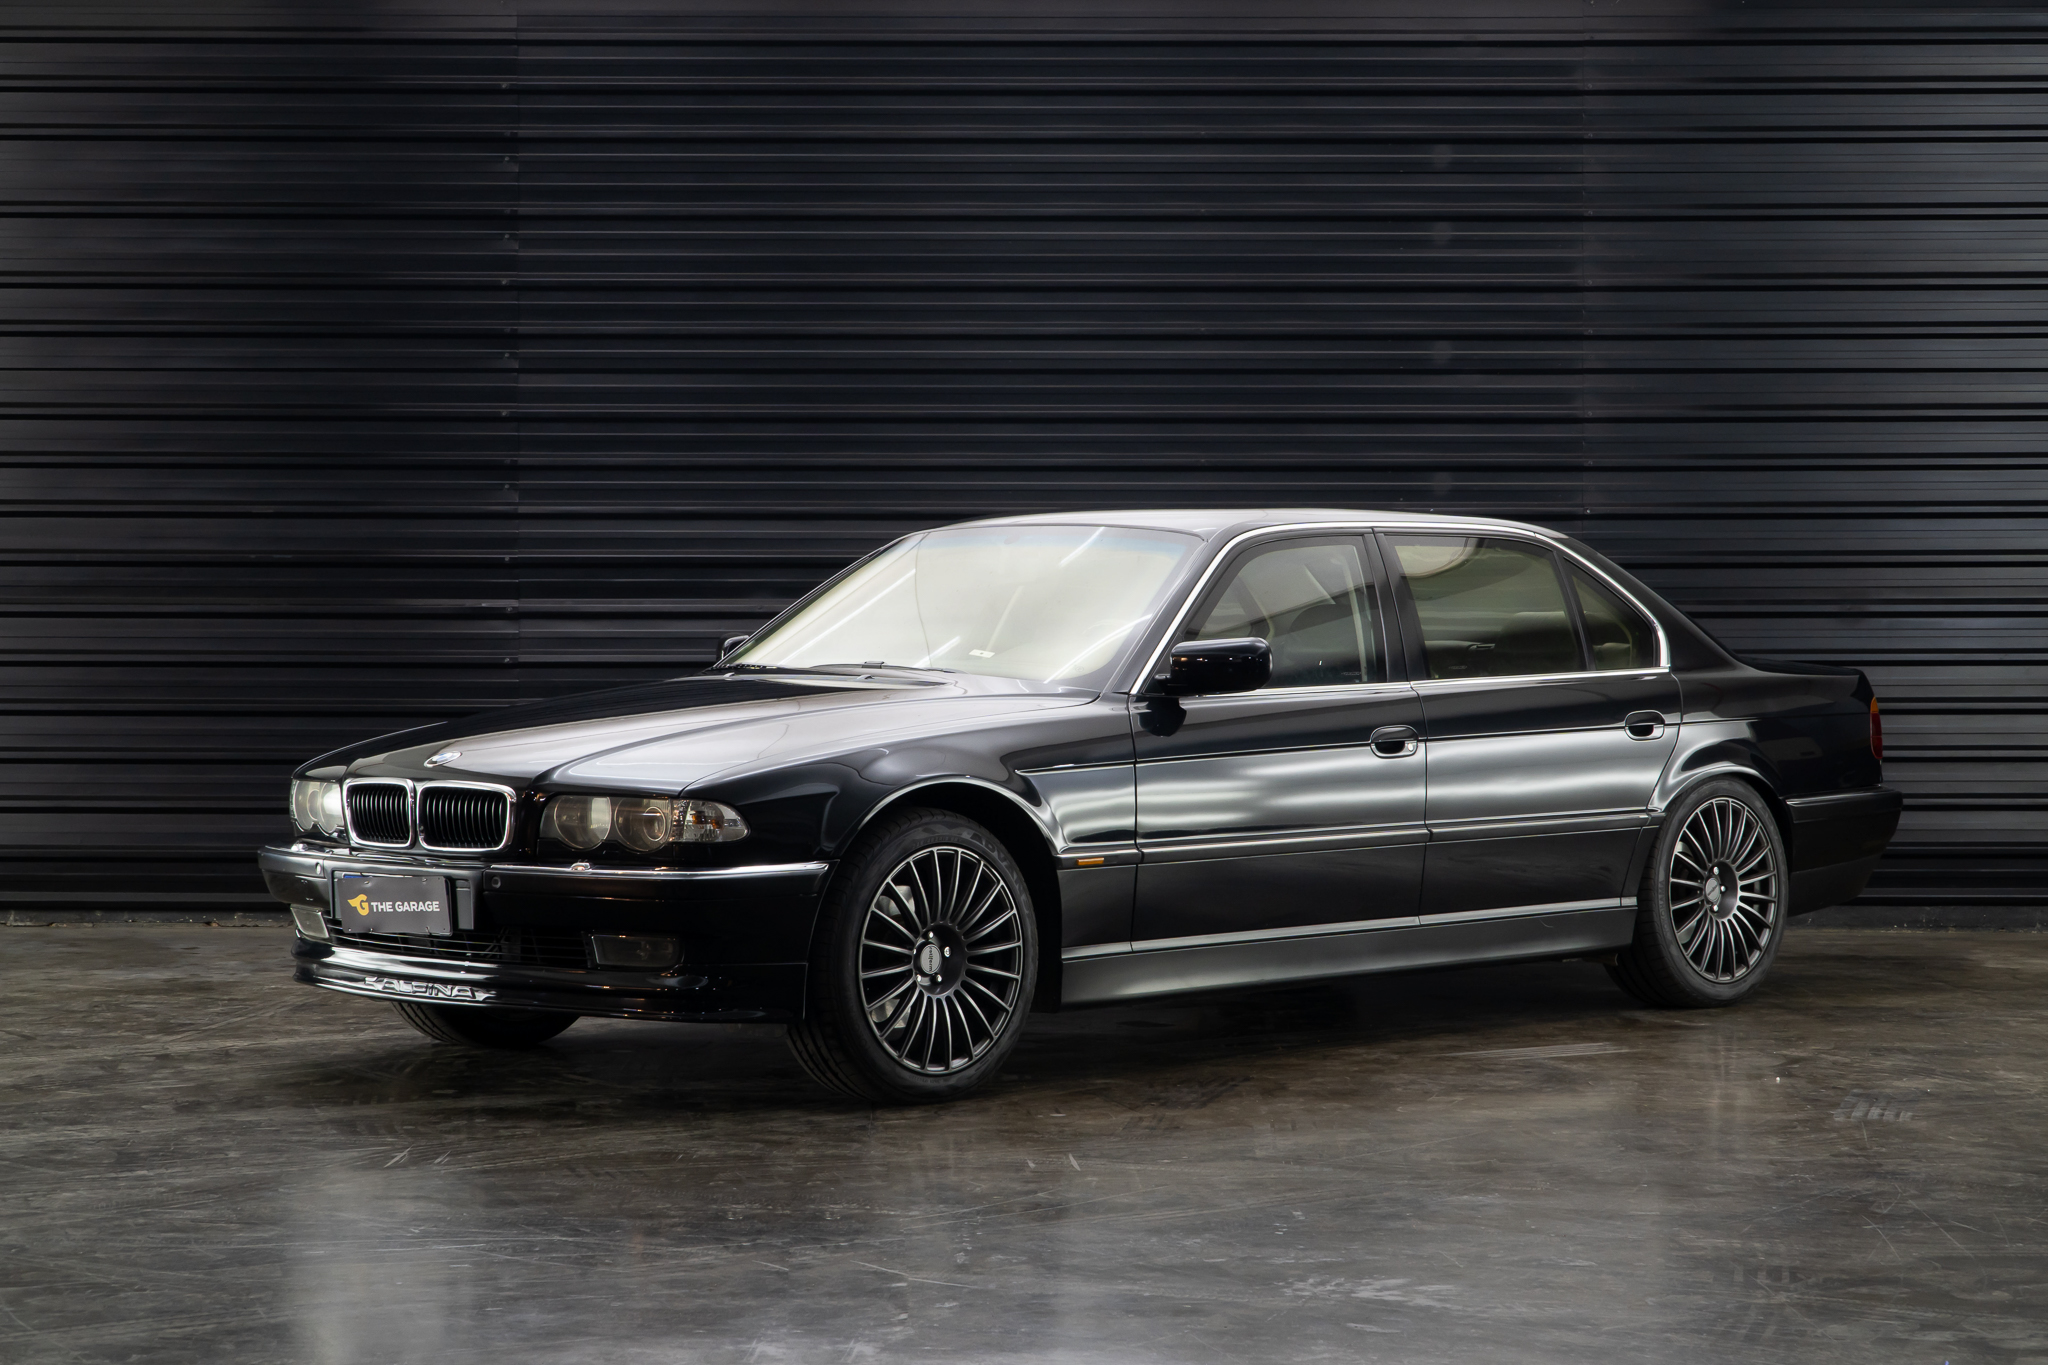 2000 BMW 740IL a venda The garage